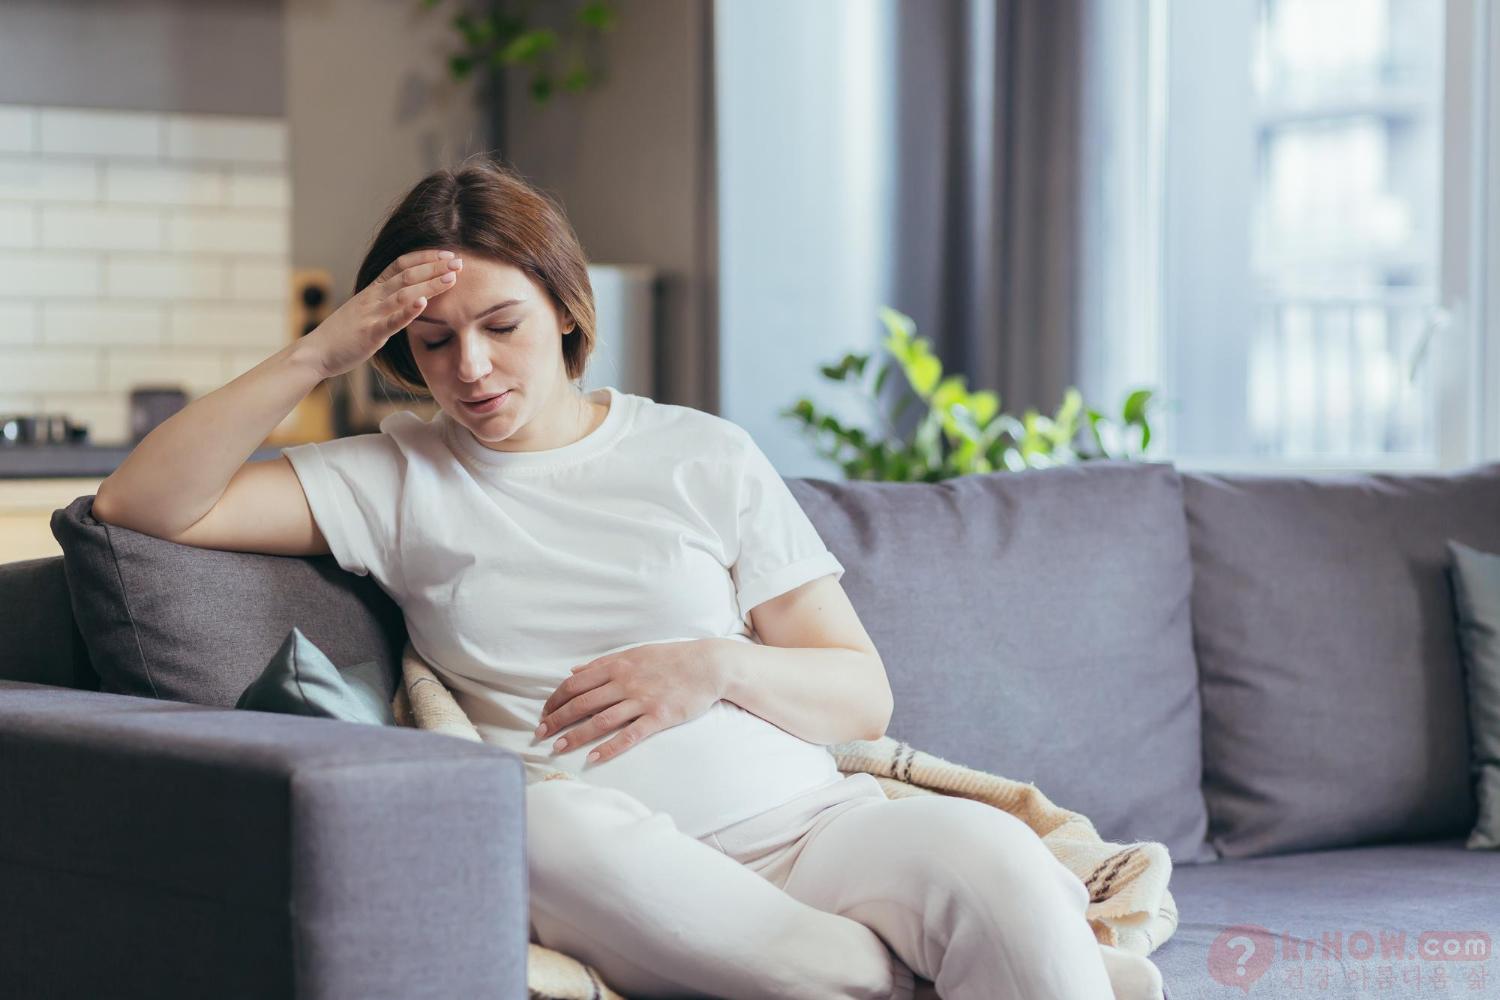 폐경기 증상과 임신 (Menopause Symptoms and Pregnancy)